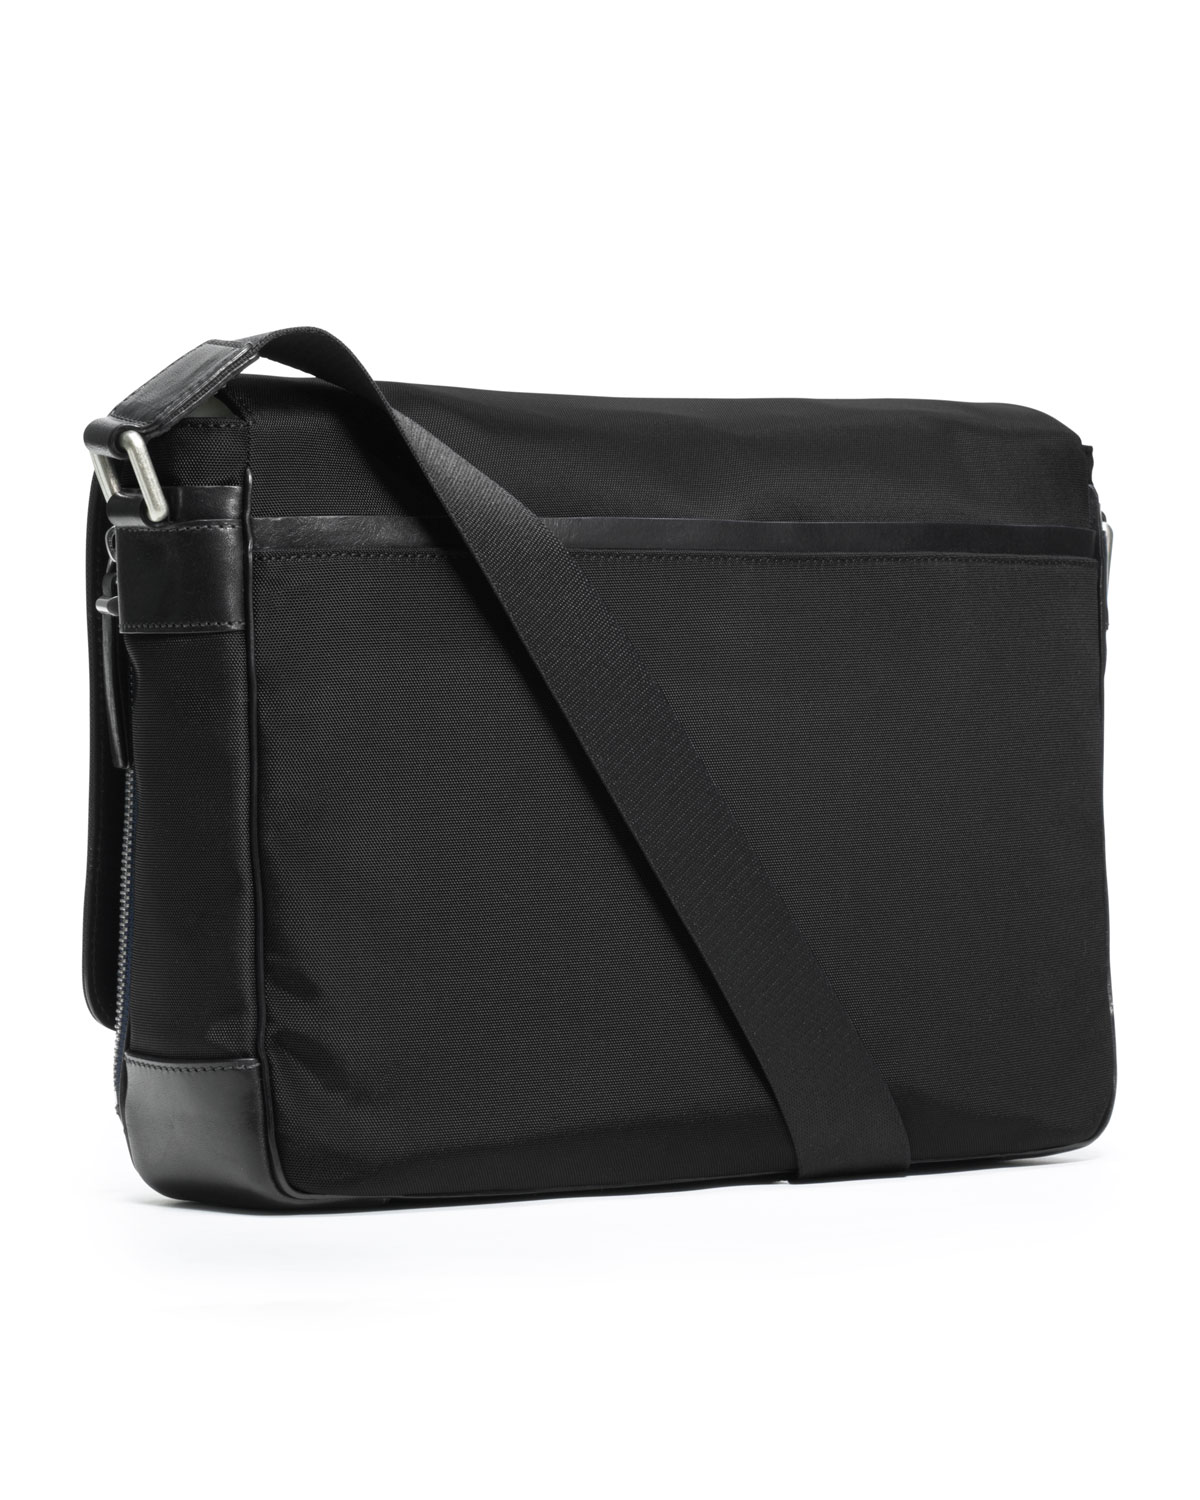 Michael Kors Large Nylon Messenger Bag in Black for Men - Lyst